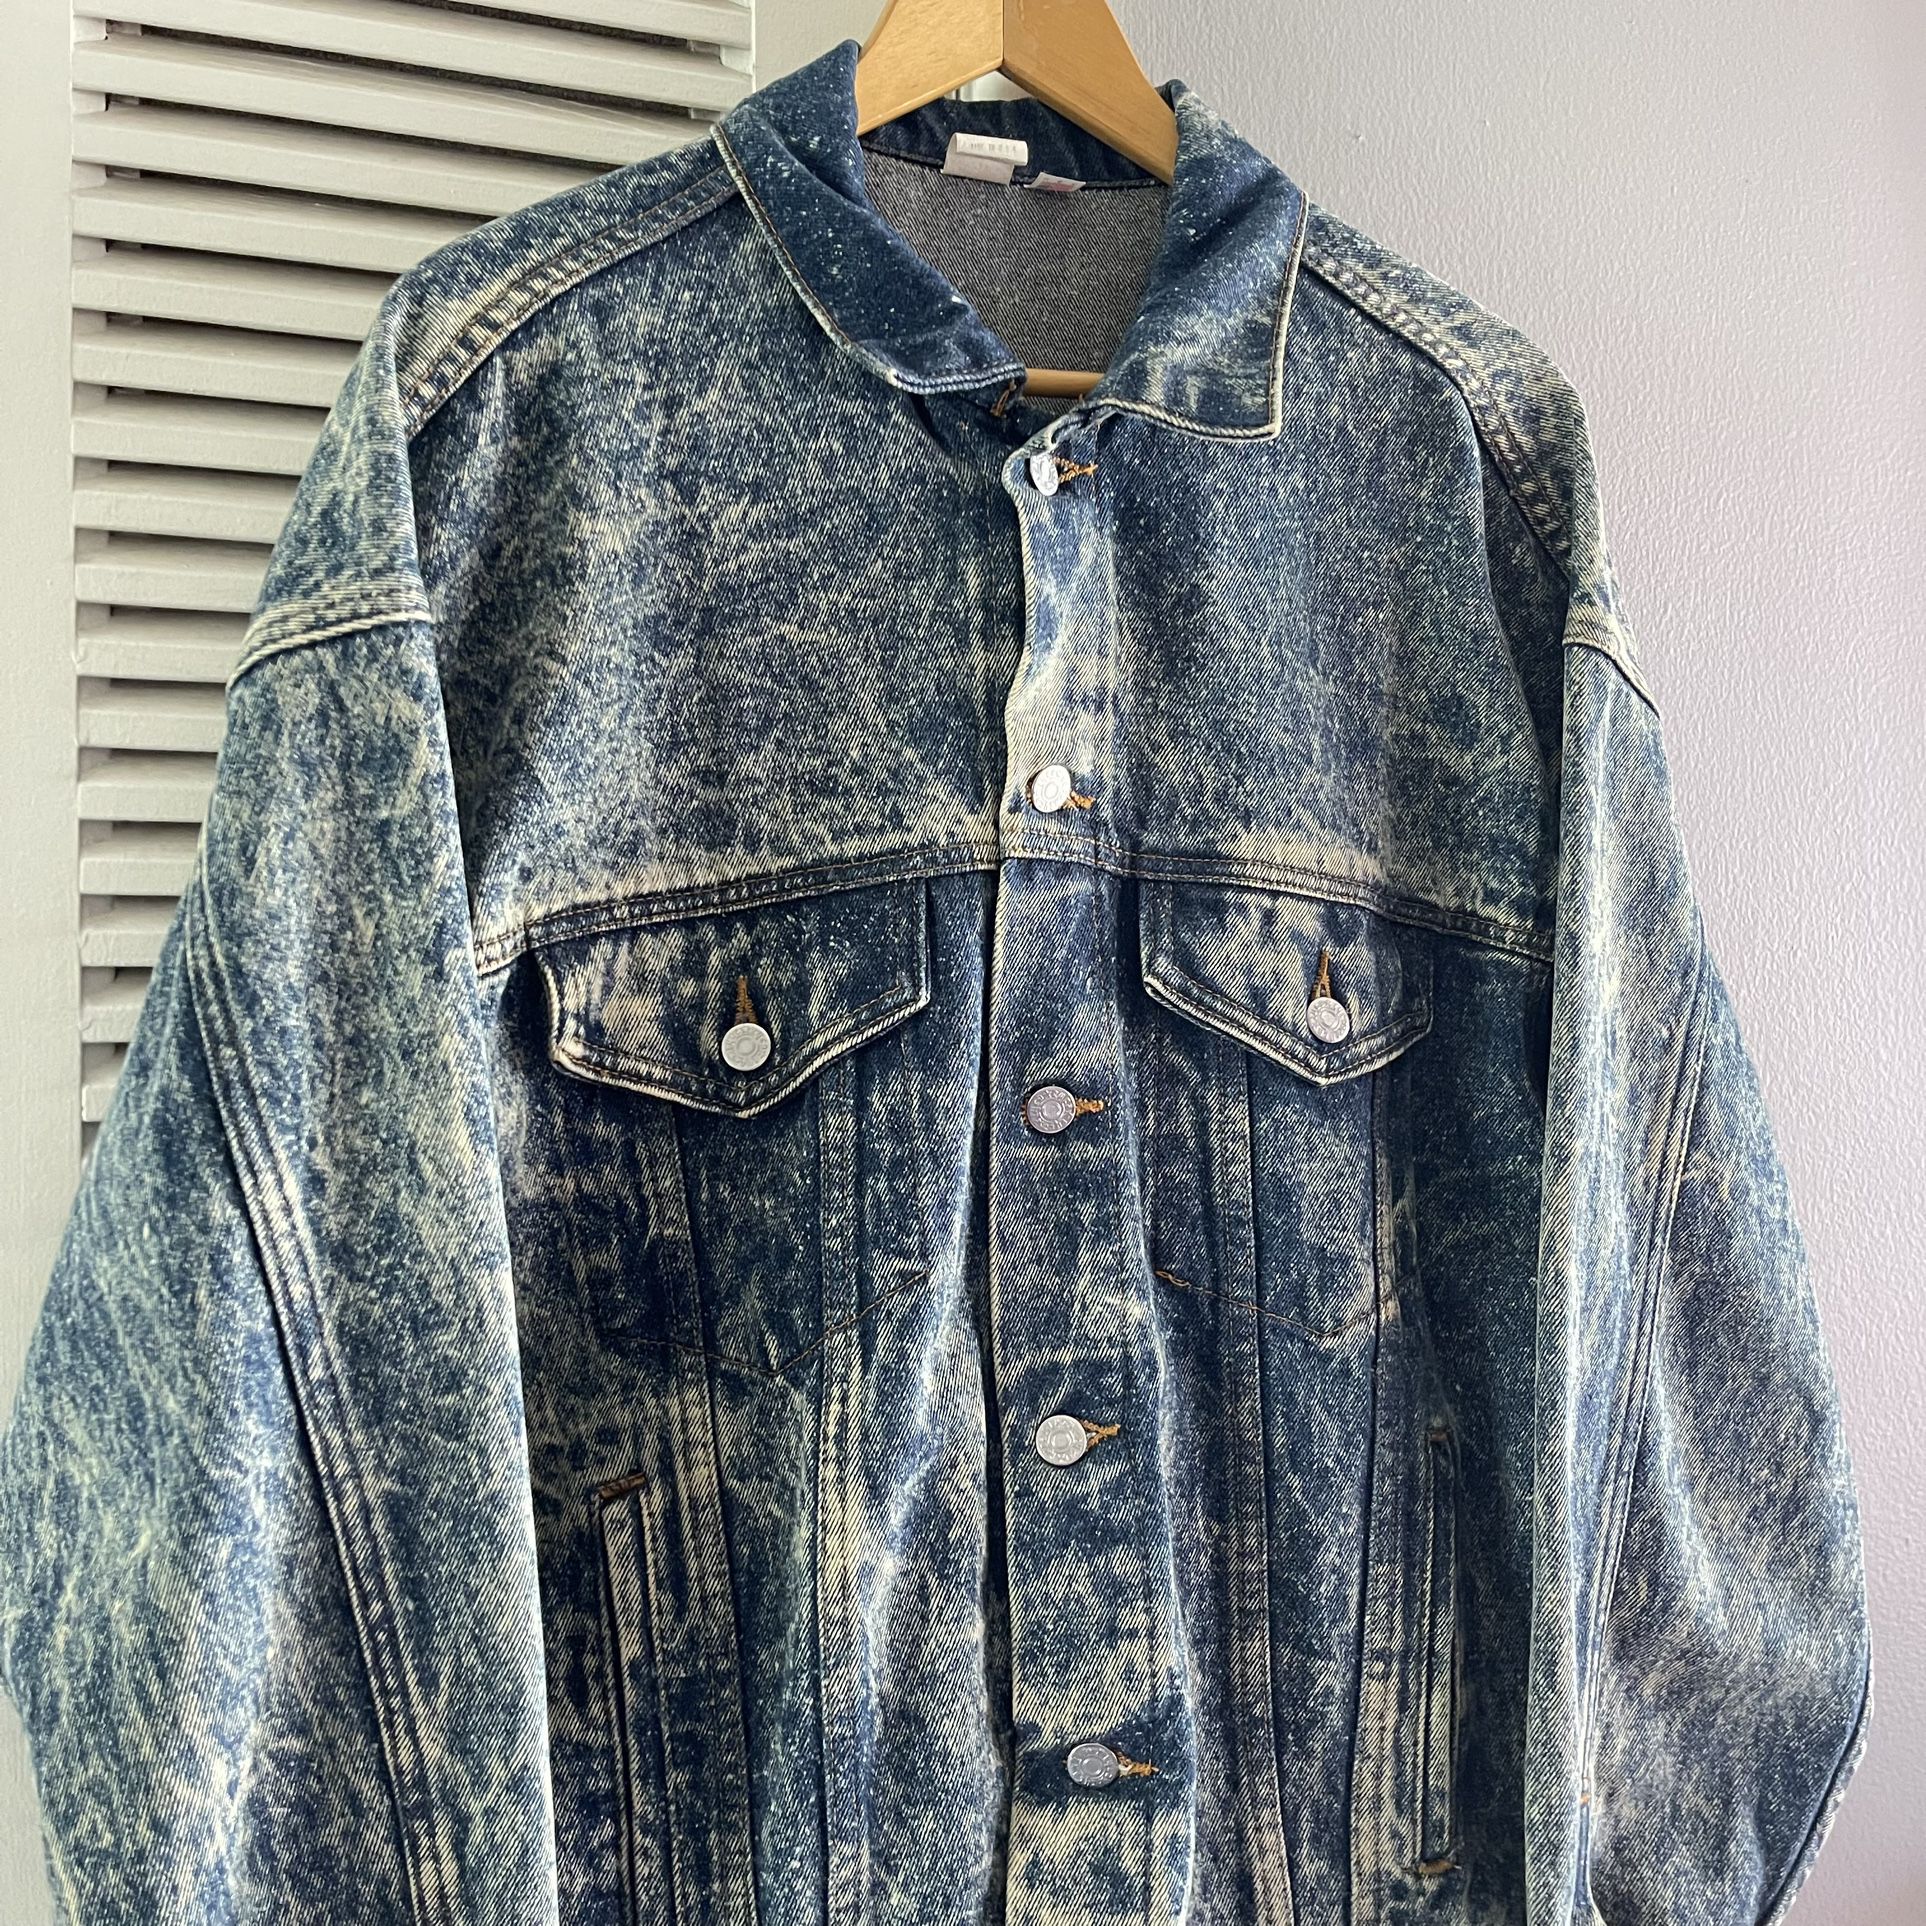 Vintage 90’s Tyca Acid Wash Denim Jacket for Sale in Whittier, CA - OfferUp